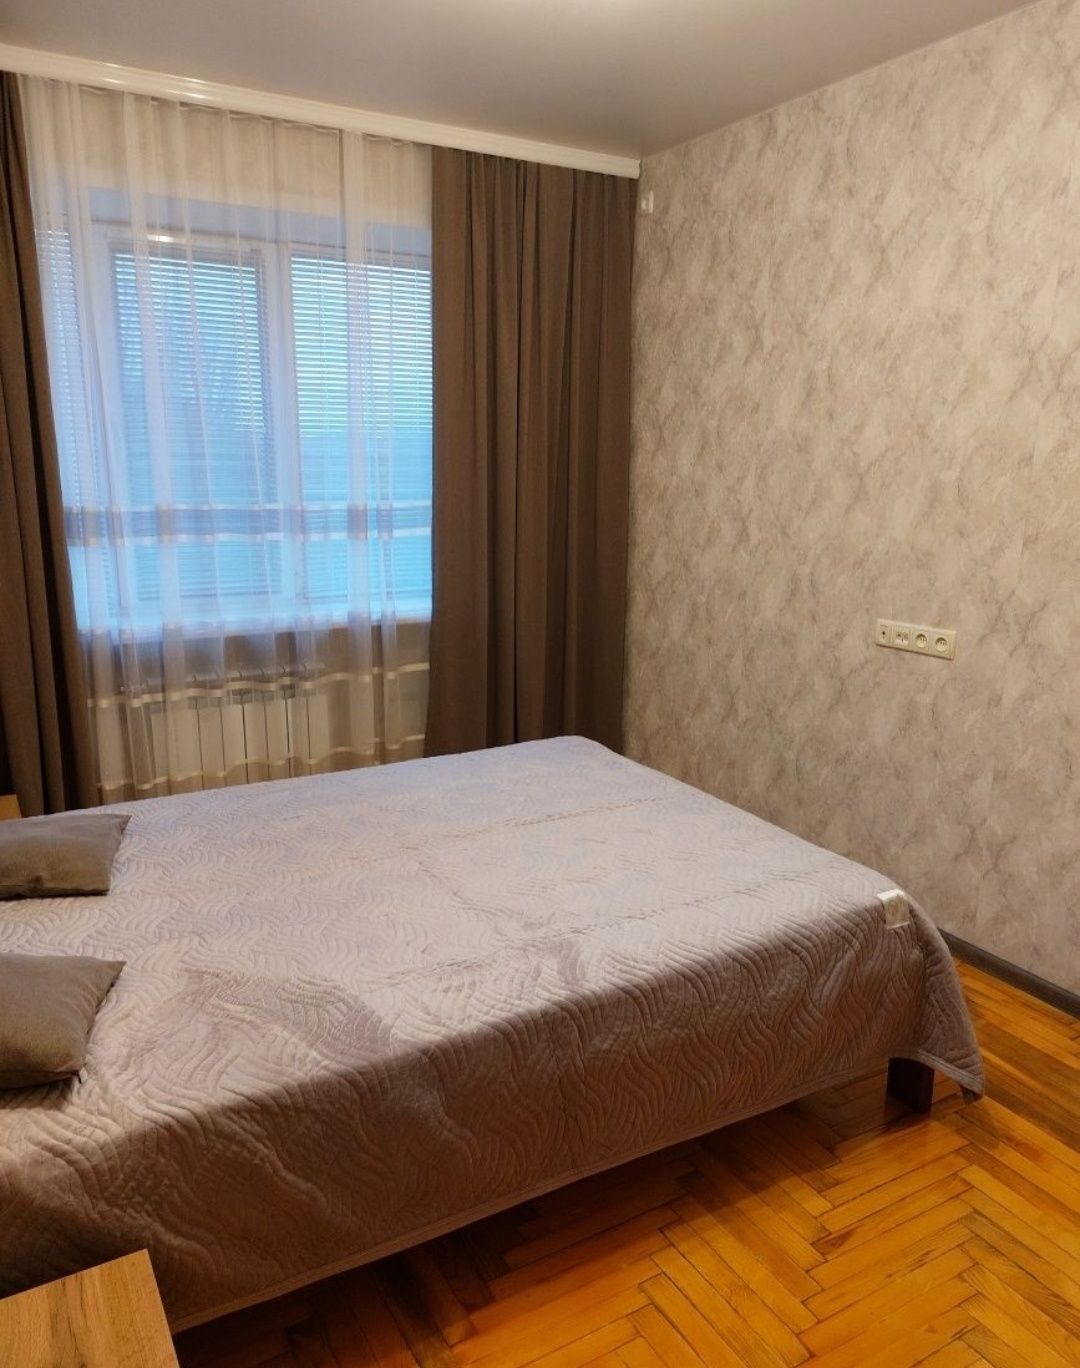 Оренда 2х кімнатної квартири у Шевченківському р-ні (М. Корищенка 28)